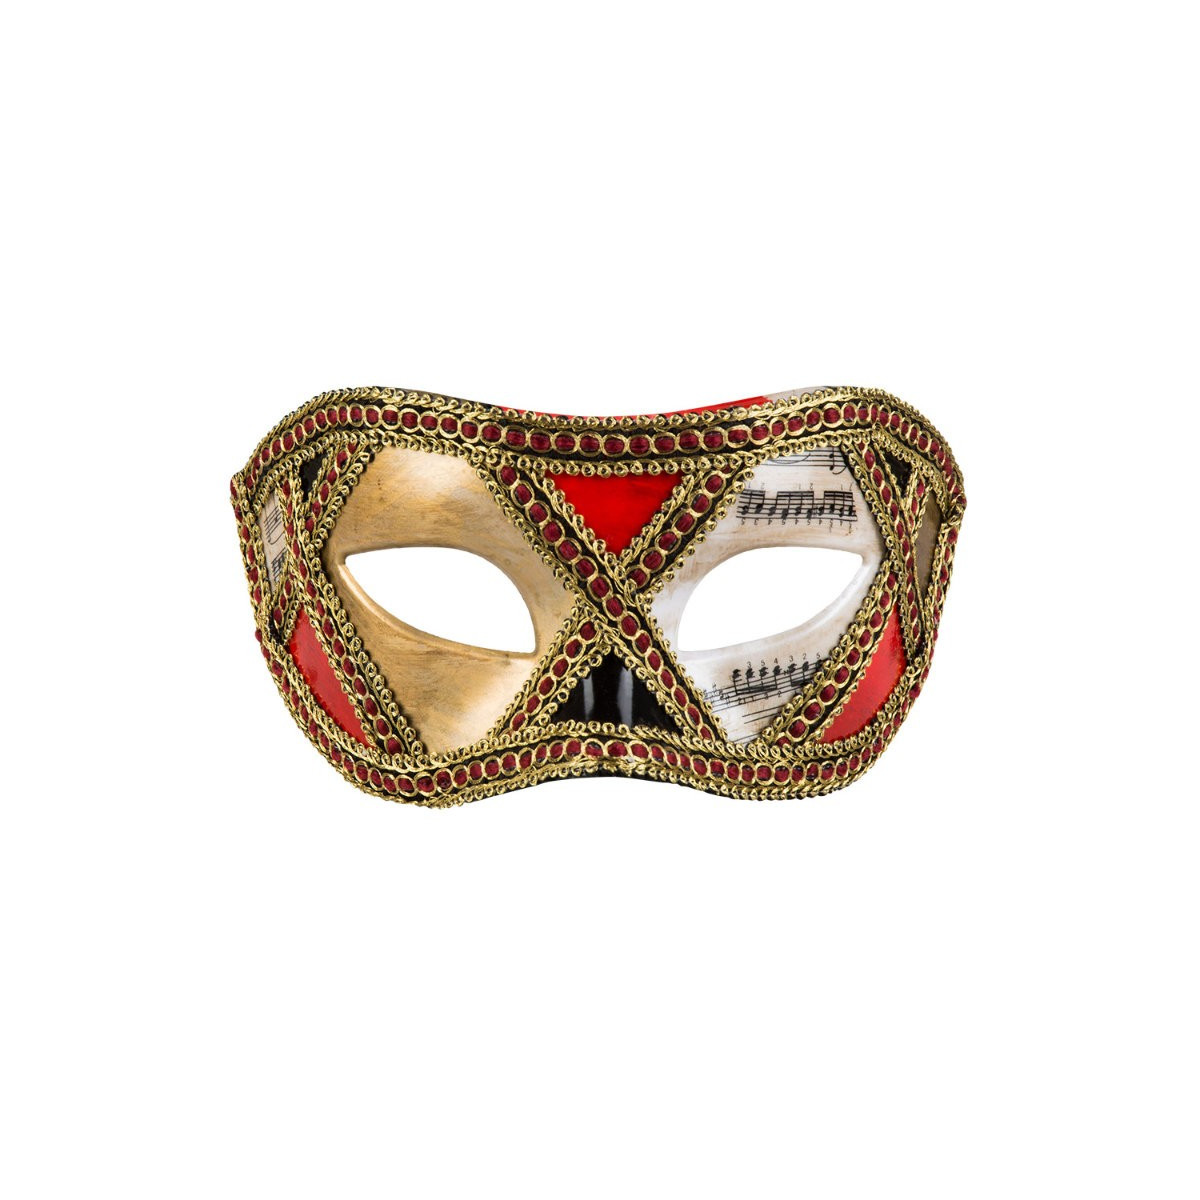 Musica delle maschere veneziane